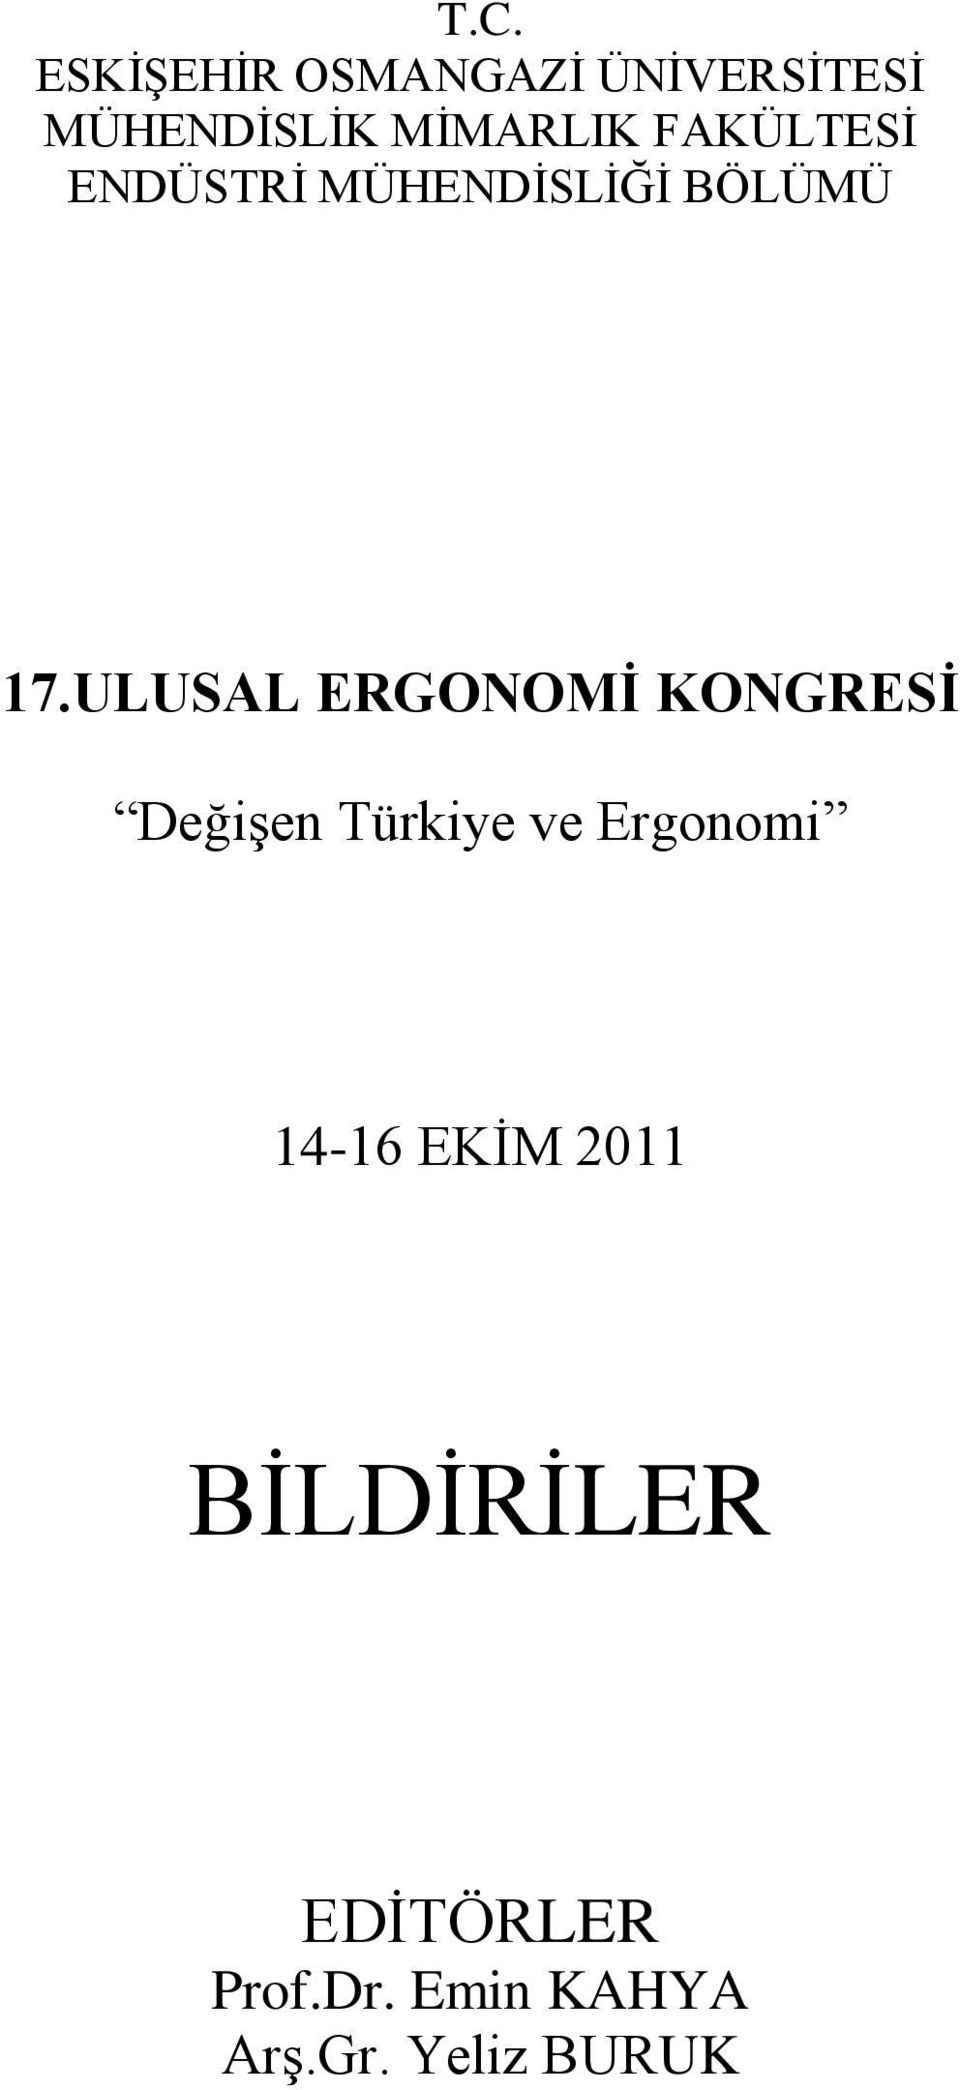 ULUSAL ERGONOMĠ KONGRESĠ DeğiĢen Türkiye ve Ergonomi